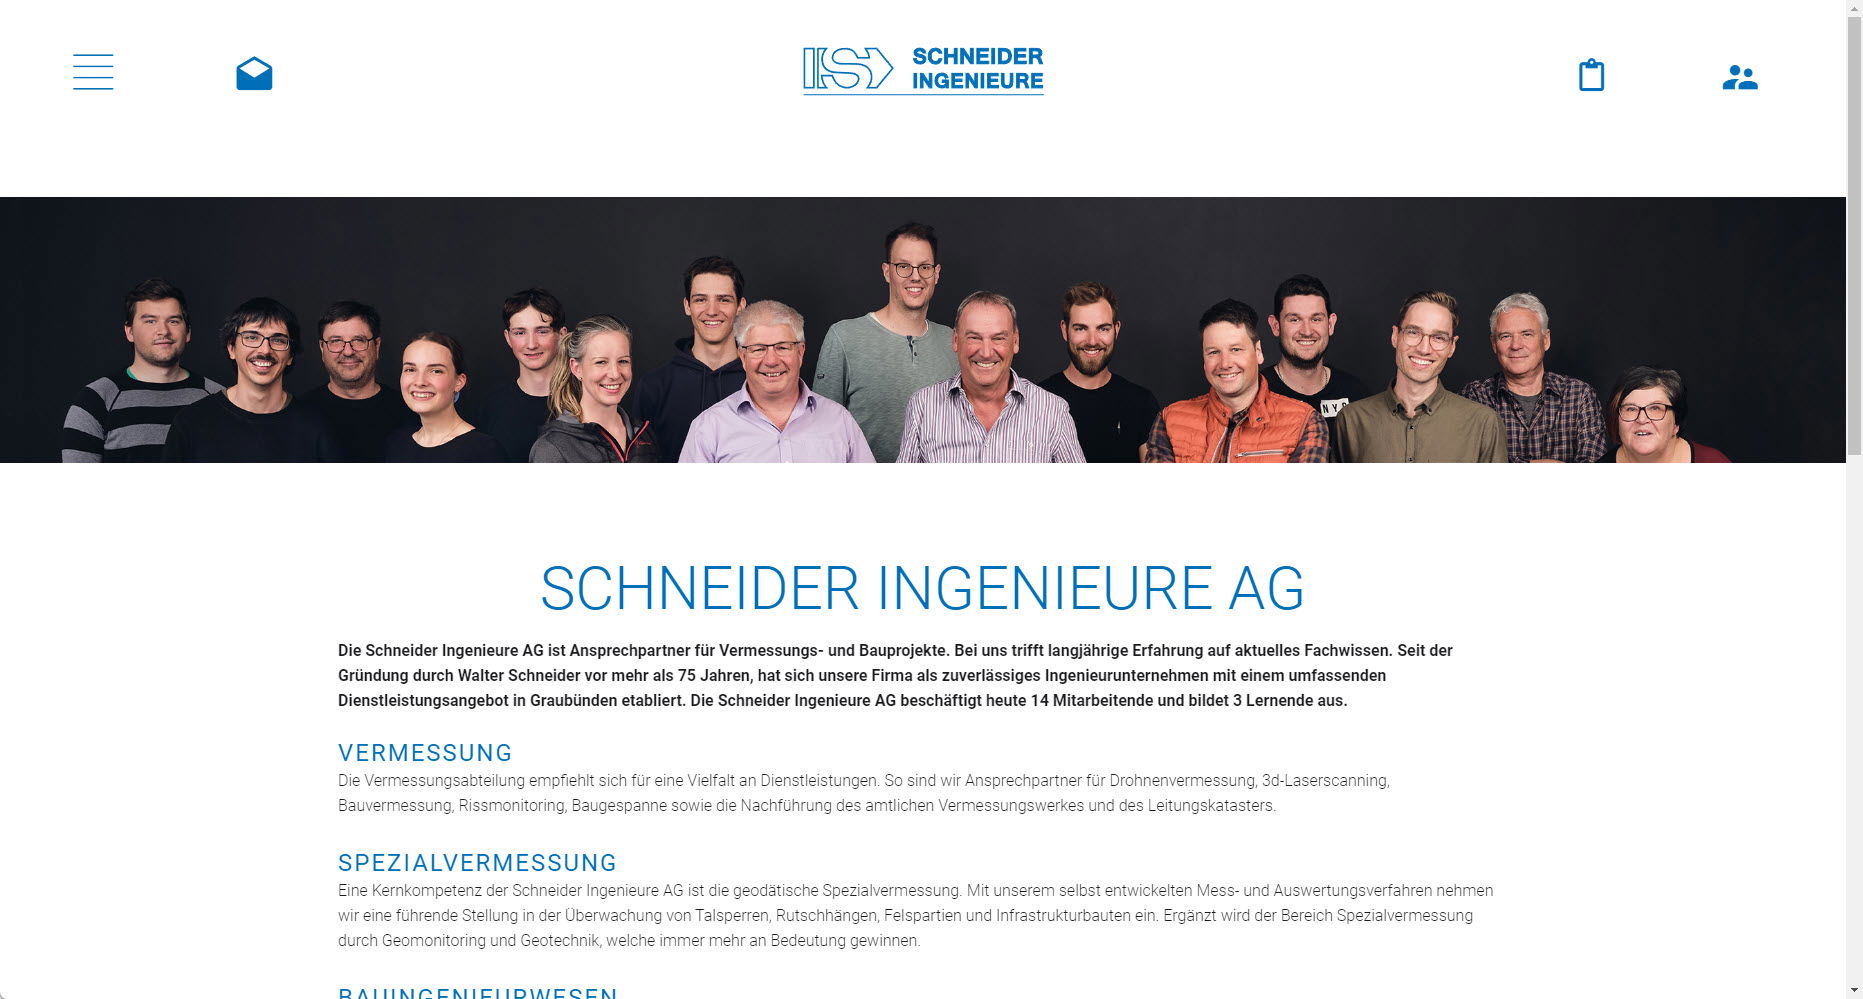 Schneider Ingenieure AG